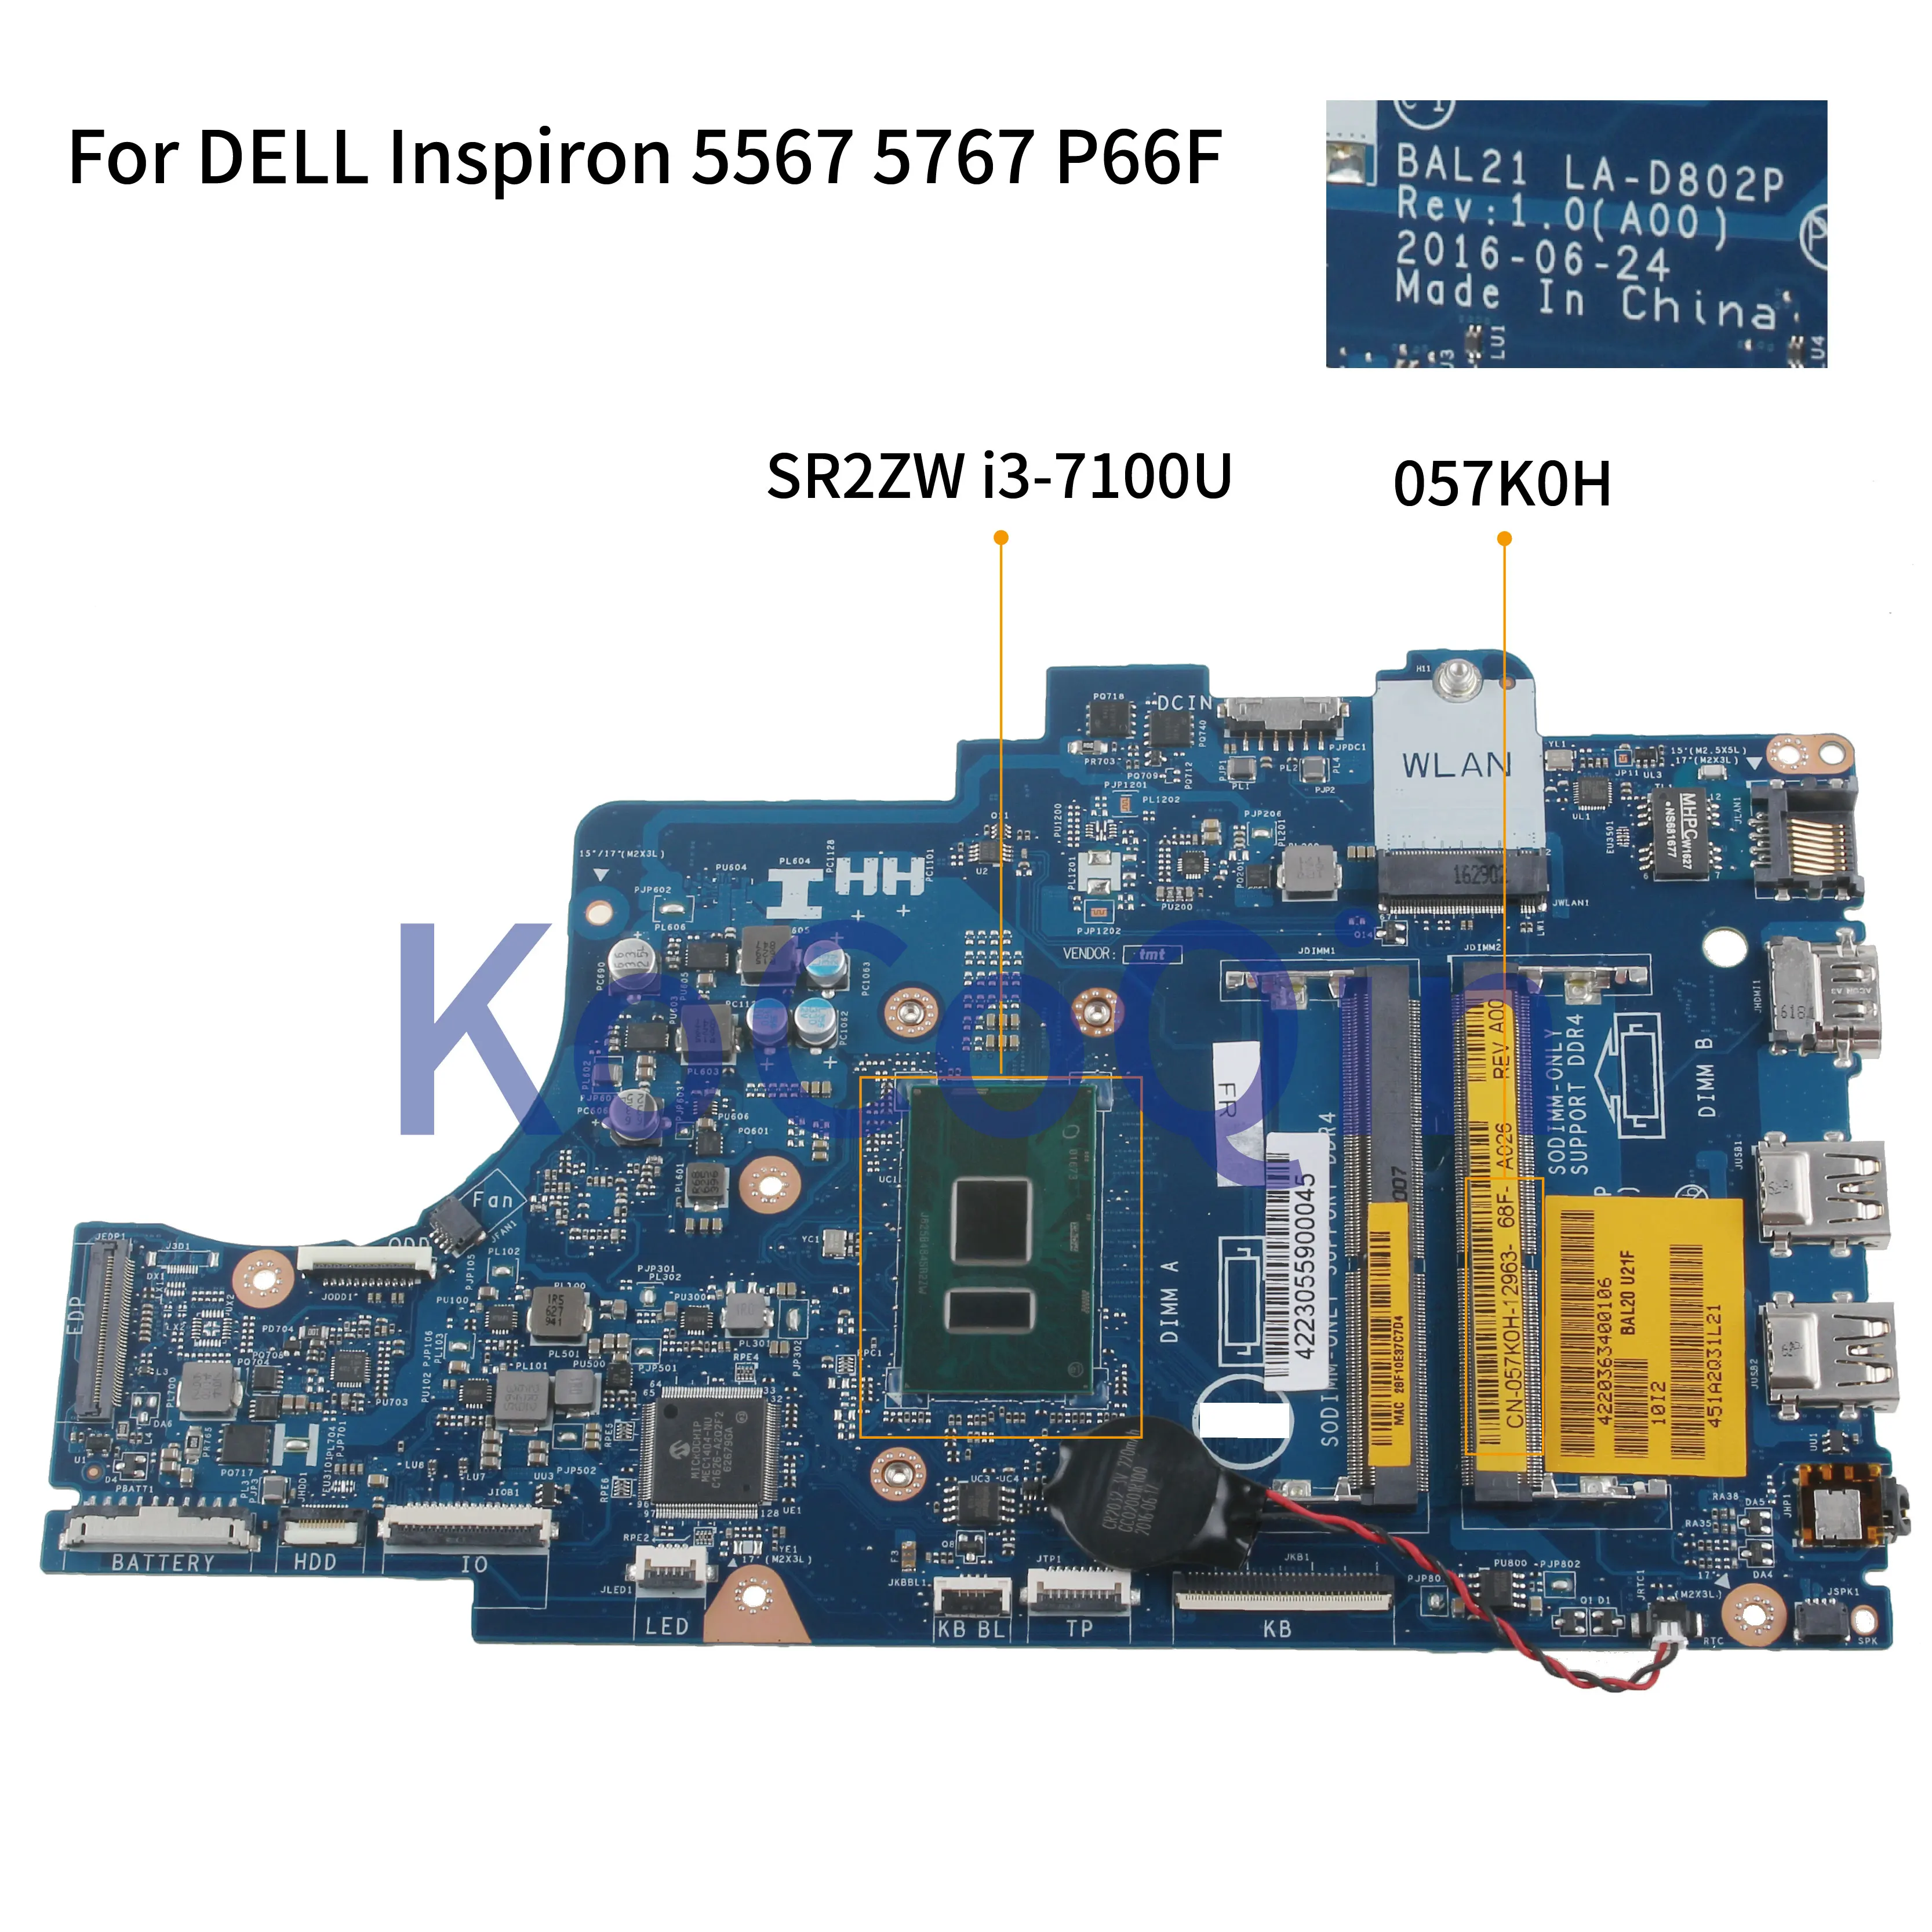 KoCoQin Prenosni računalnik z matično ploščo Za DELL Inspiron 5567 5767 P66F Core I3-7100U Mainboard BAL21 LA-D802P CN-057K0H 057K0H SR2ZW